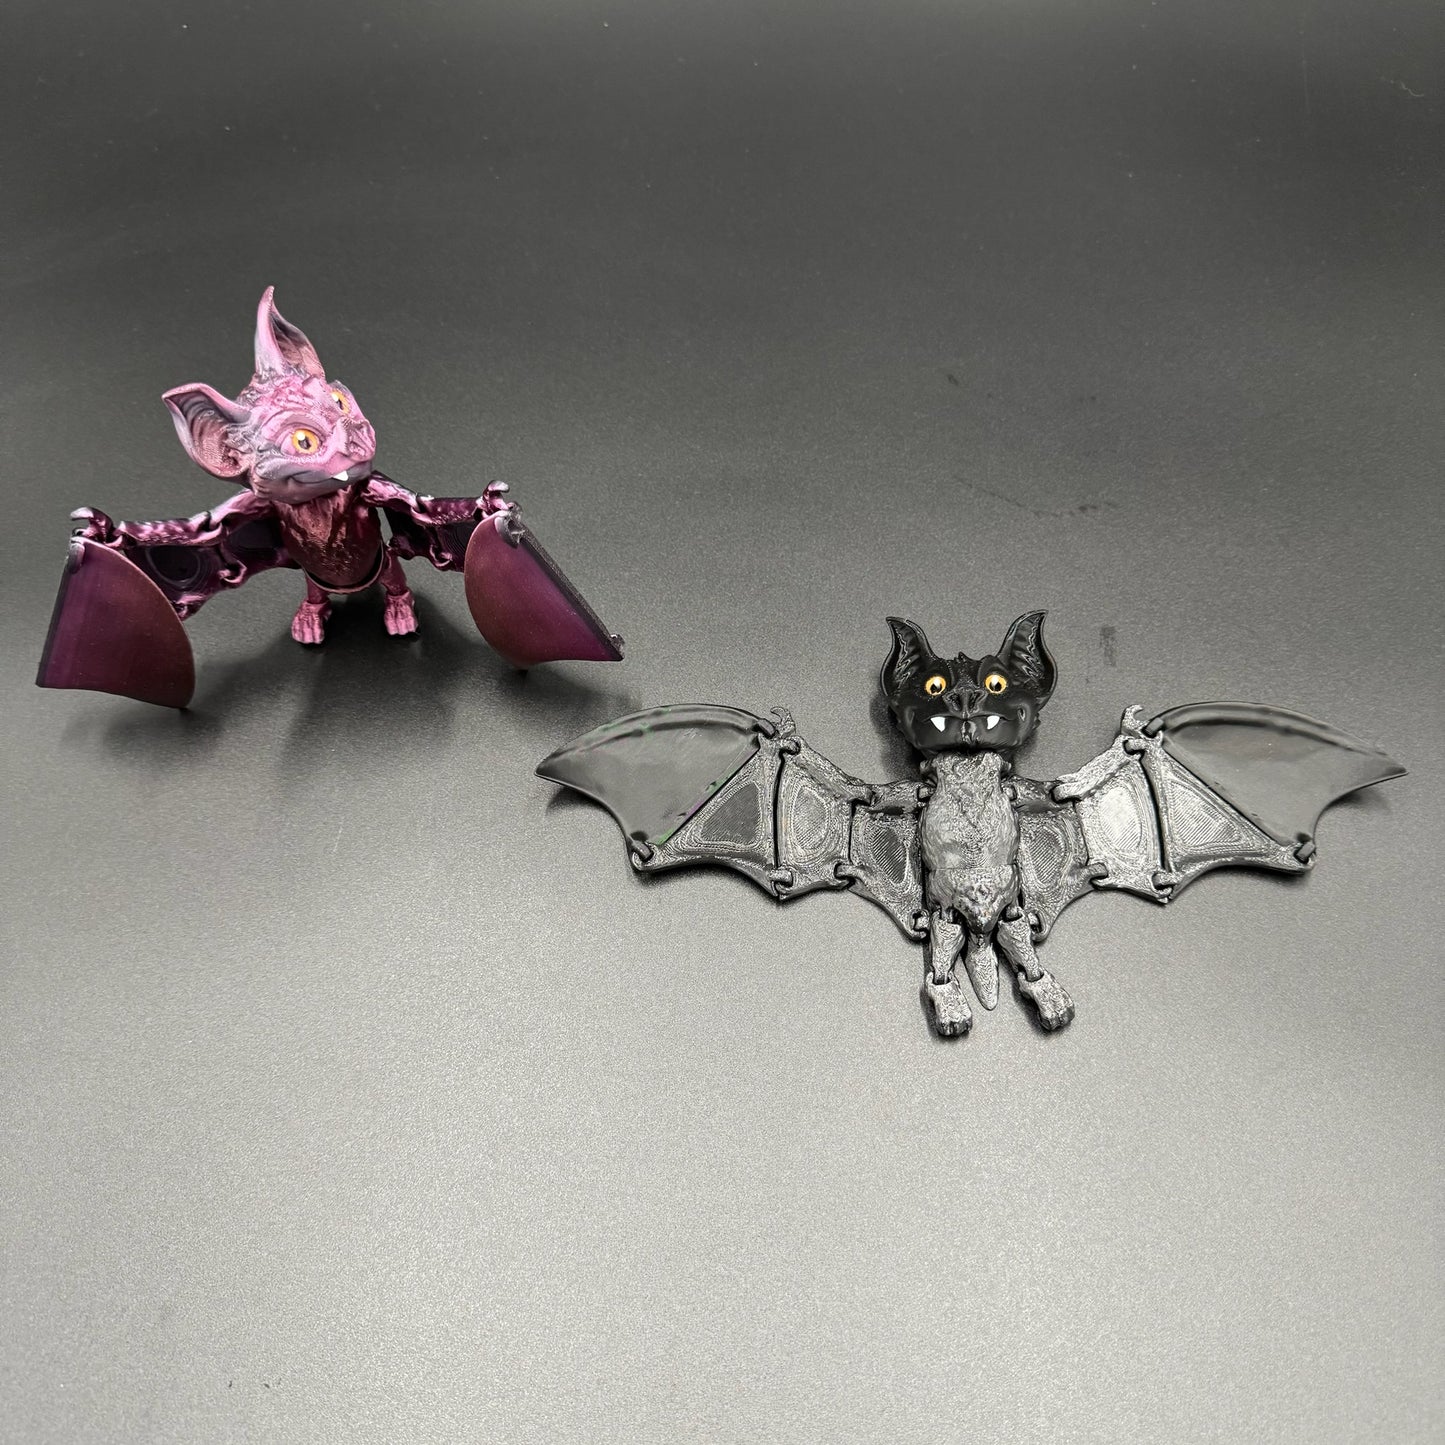 3D Printed Bat